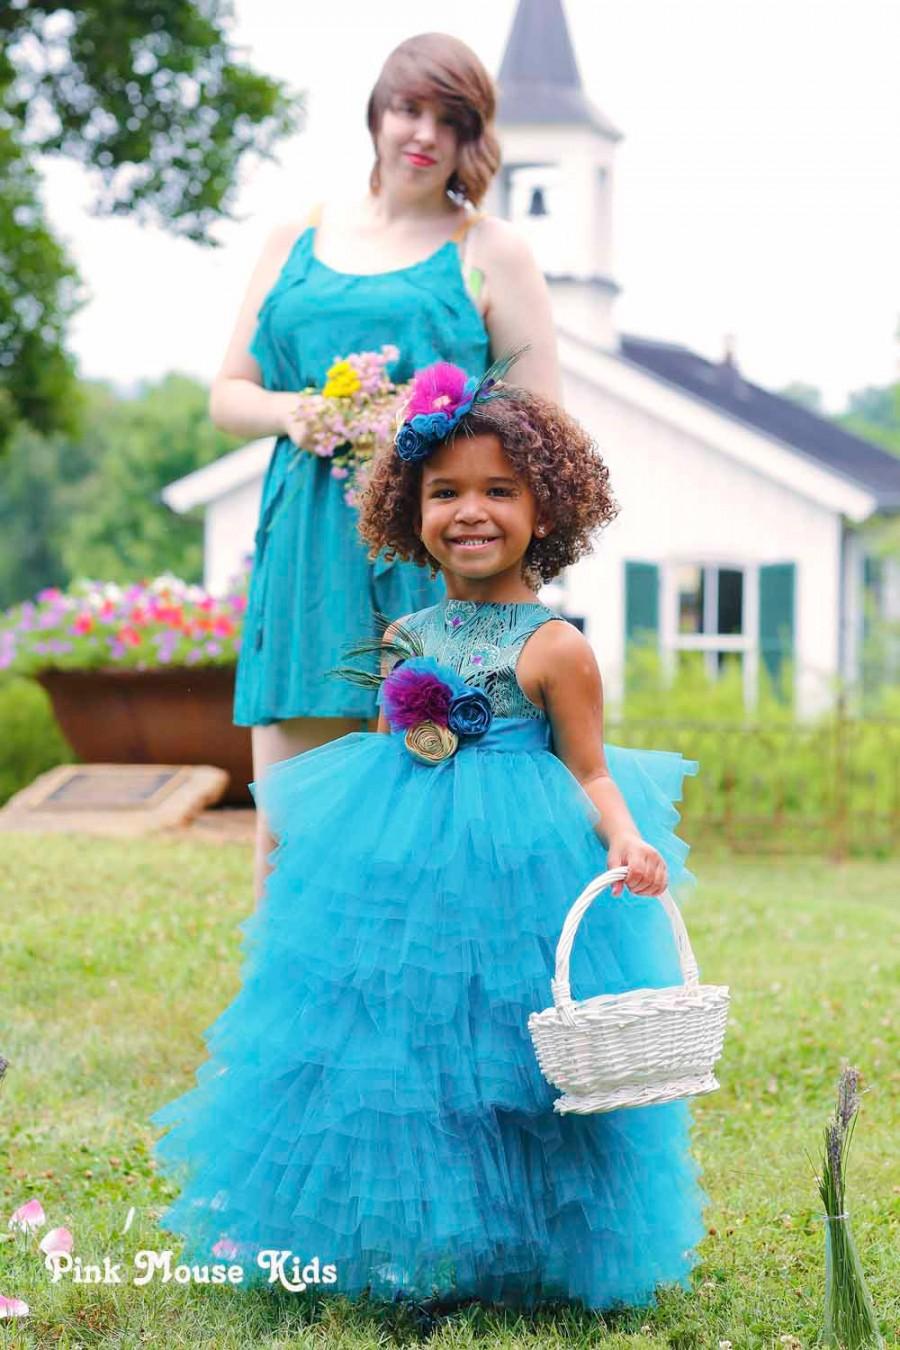 زفاف - Peacock Flower Girl Dresses - Boutique Flower Girl Dresses - Custom Made Flower Girl Dresses - Flower Girl Tutu Dress - Sizes 2T to 8 Years